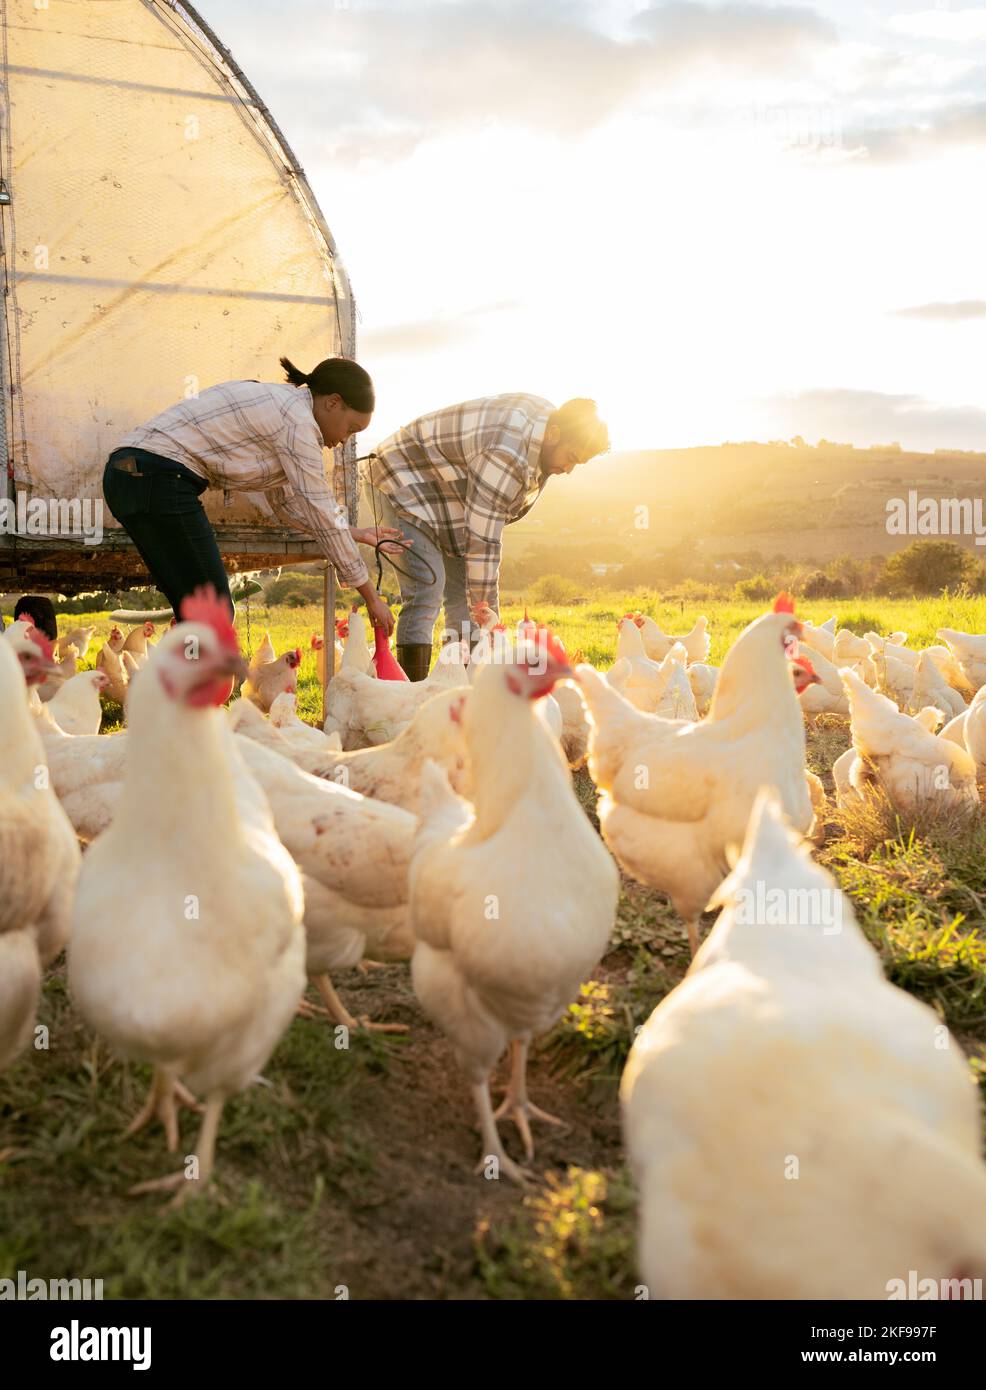 Huhn, Geflügel und Mann mit Frau Landwirtschaft, Vieh und Futtertiere für die Landwirtschaft und Hühnerzucht. Landbauernhof mit Lichtreflexen Stockfoto